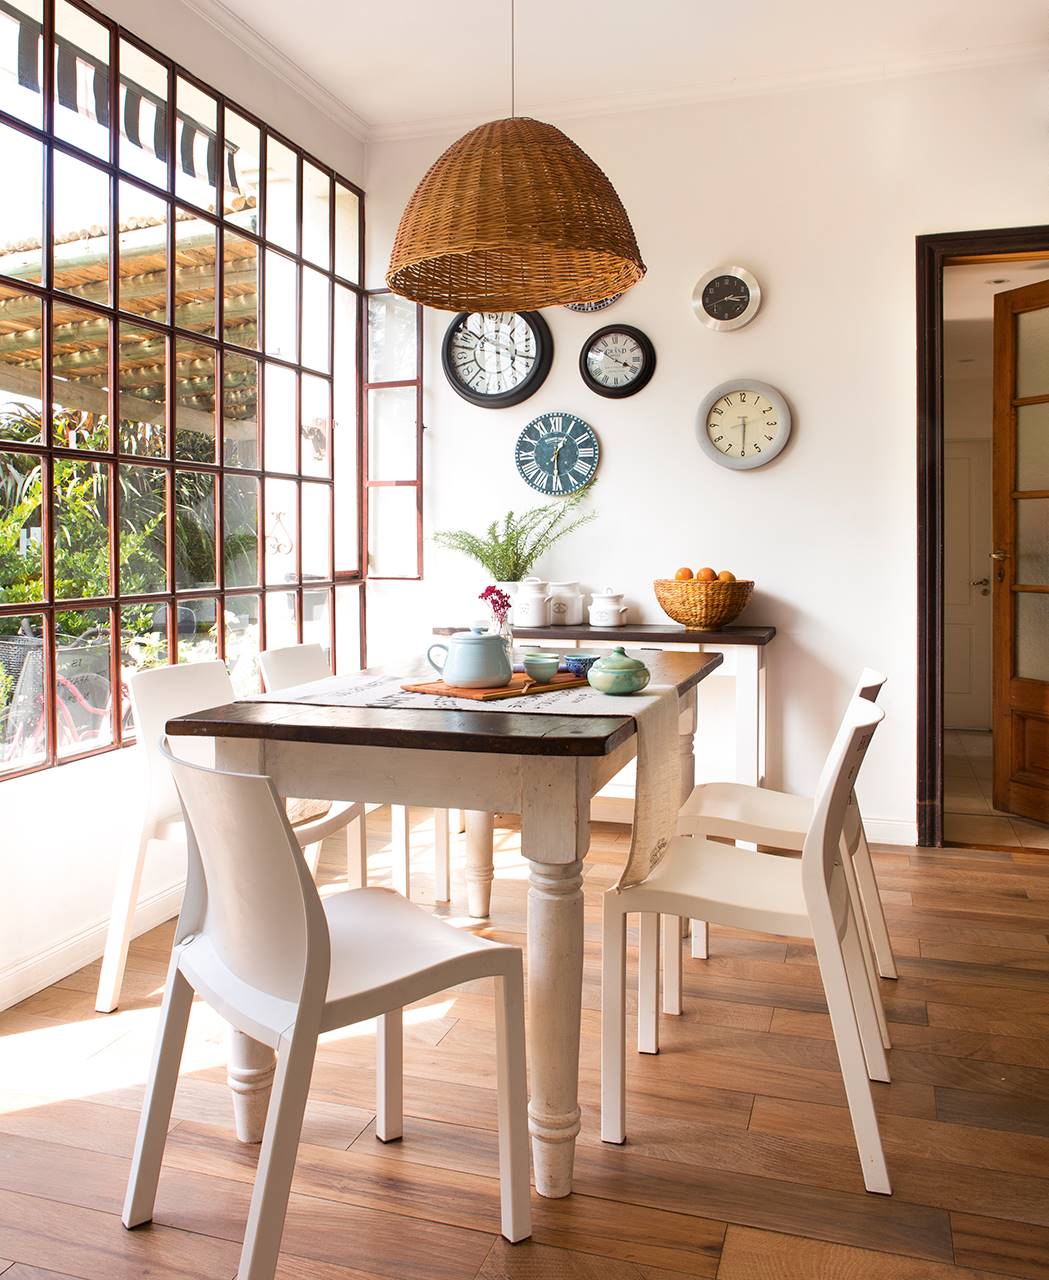 Comedor con mesa blanca de madera, ventana y relojes en la pared.